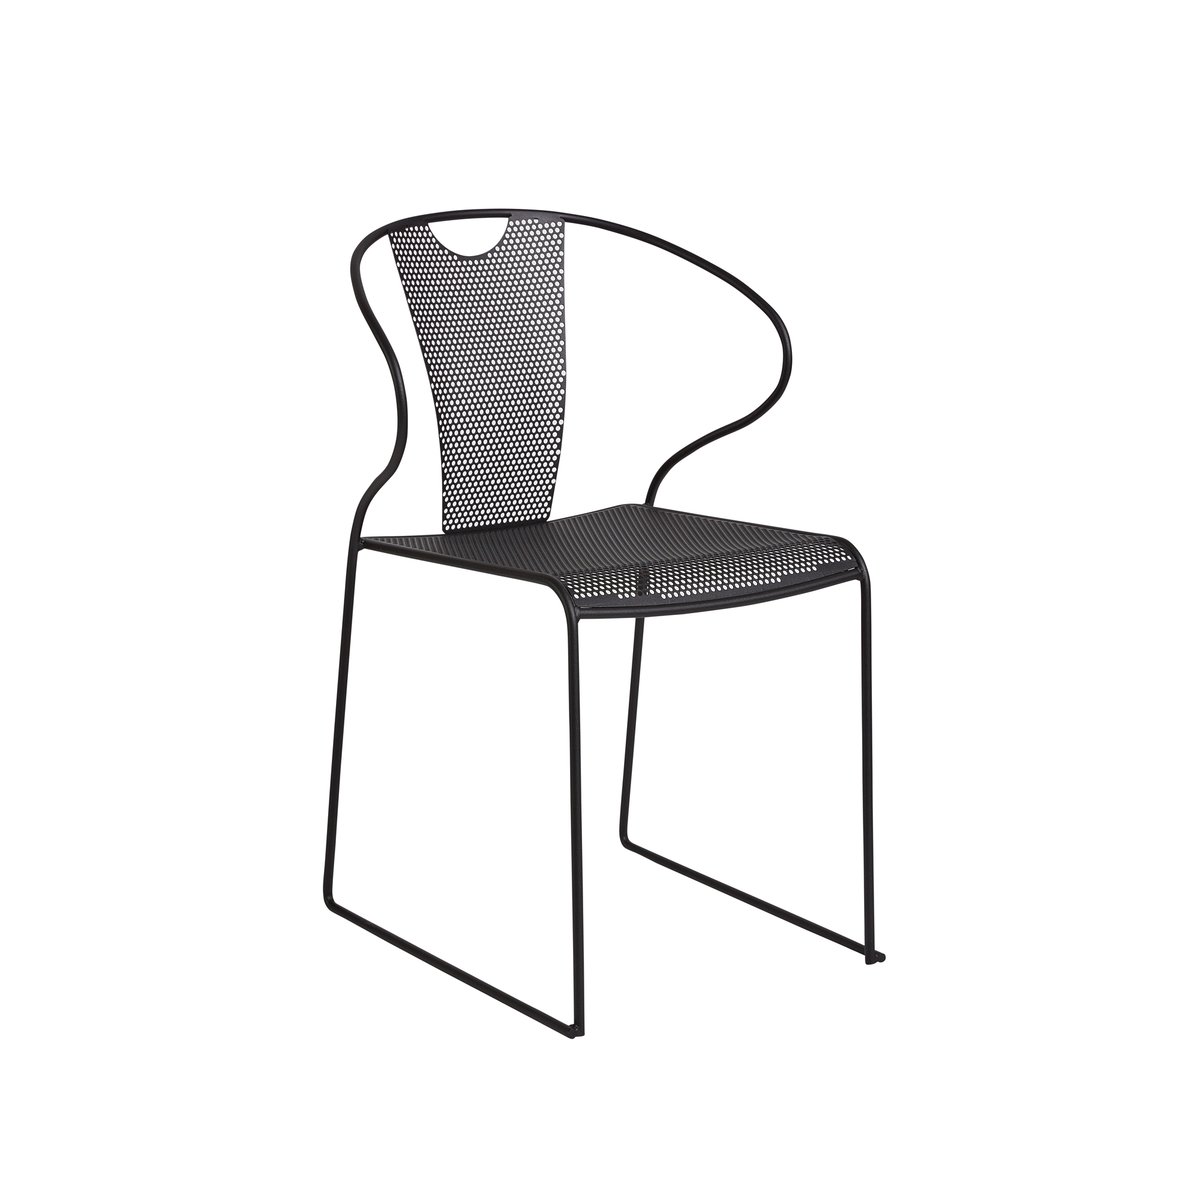 SMD Design Piazza stoel met armleuningen antraciet